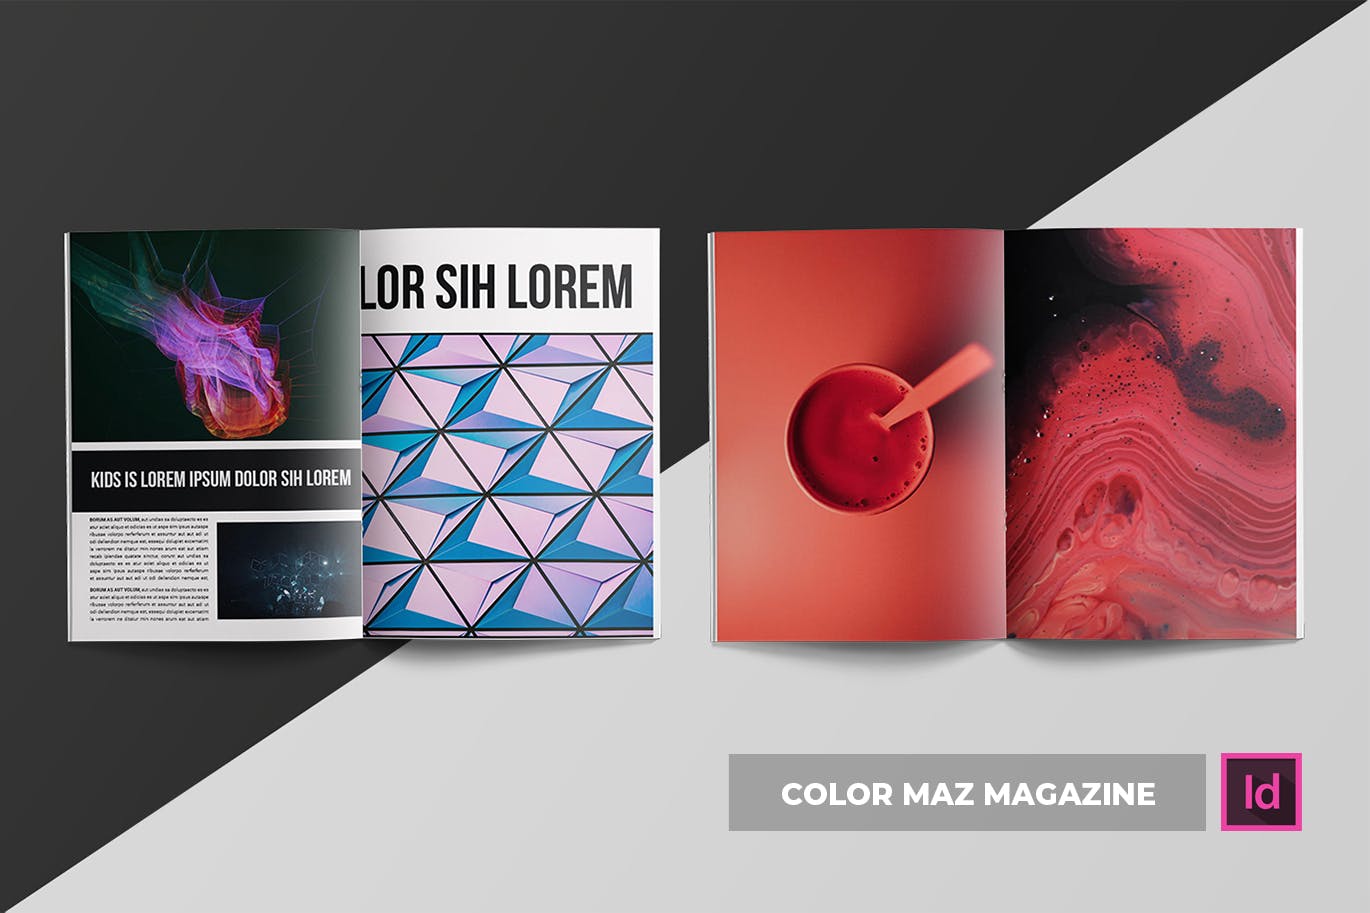 色彩设计创意杂志排版设计模板 Color Maz | Magazine Template插图(7)